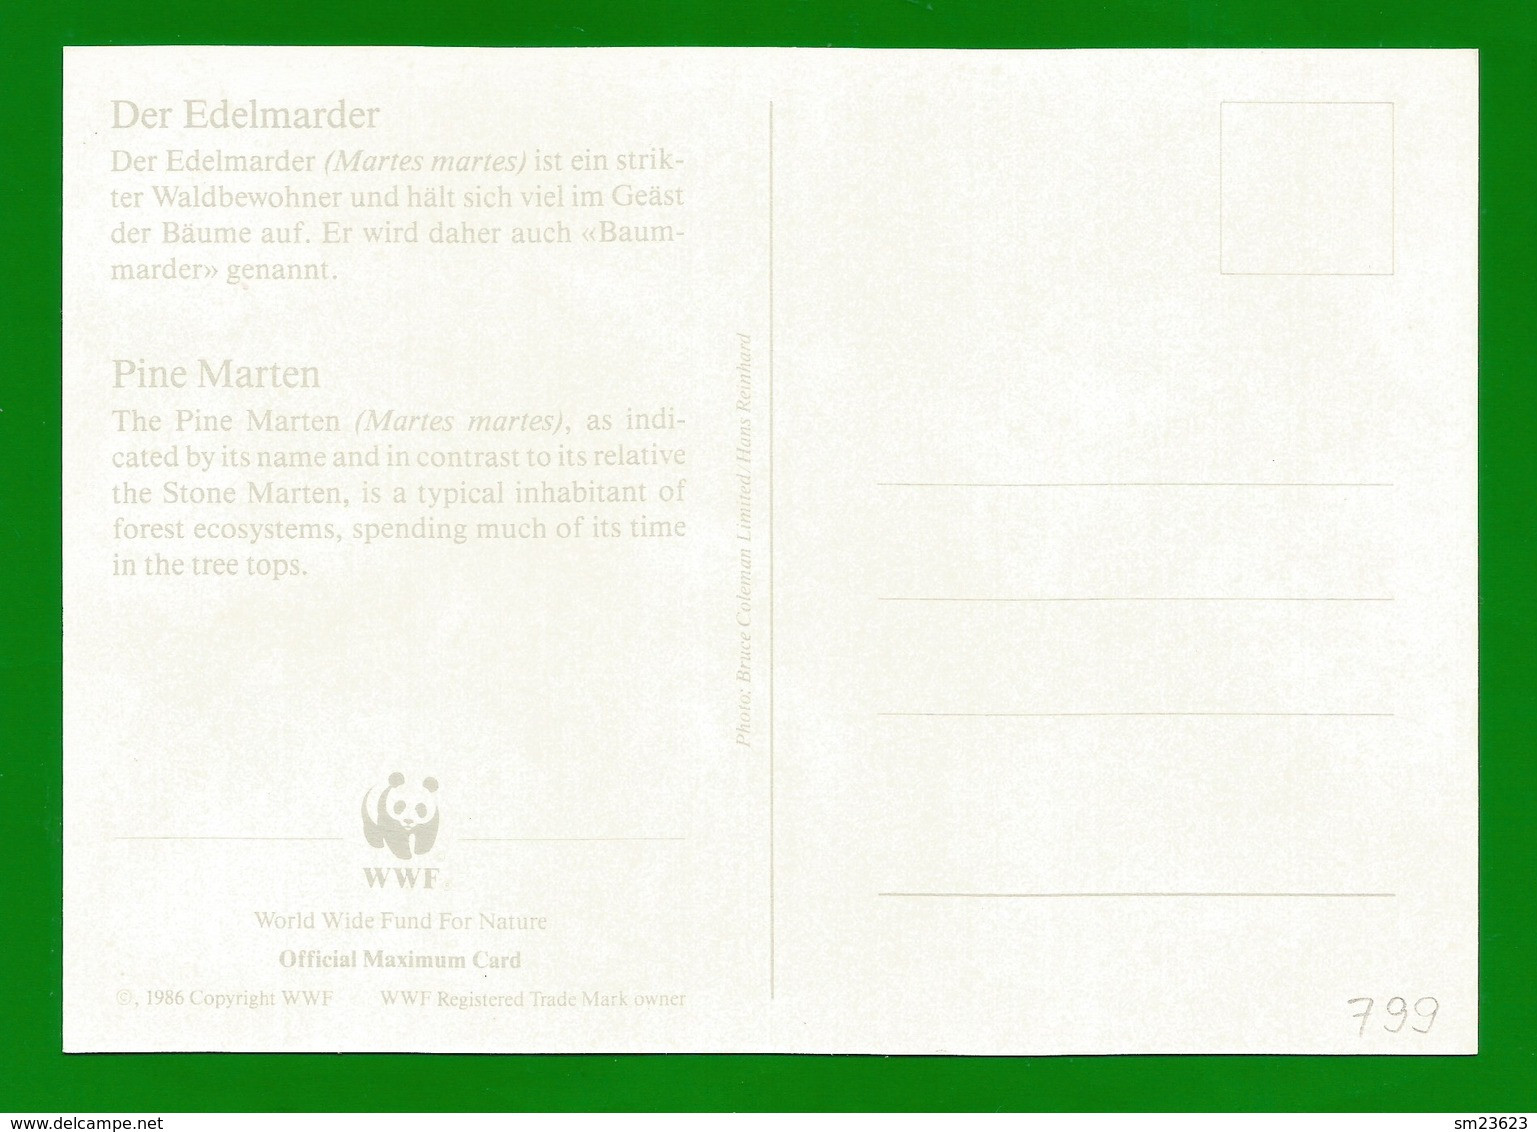 Irland 1992  Mi.Nr. 799 , Pine Marten (Der Edelmarder) - WWF Maximum Card - First Day 9.VII.1992 - Maximumkarten